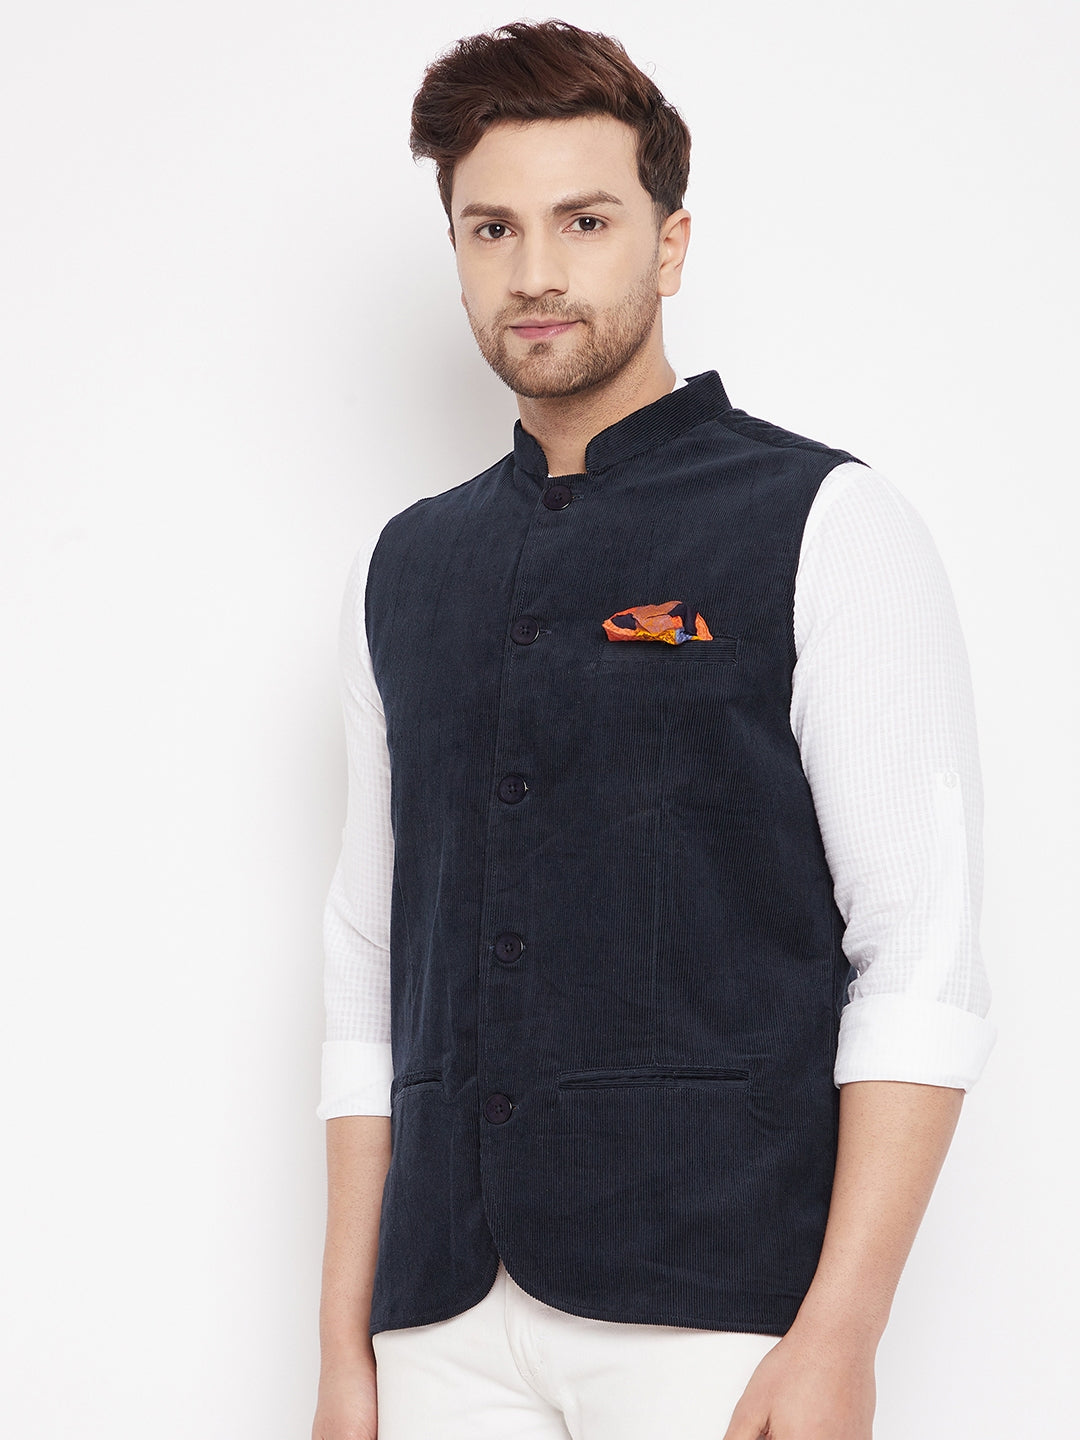 Men's Navy Color Nehru Jacket-Contrast Lining-Inbuilt Pocket Square - Even Apparels